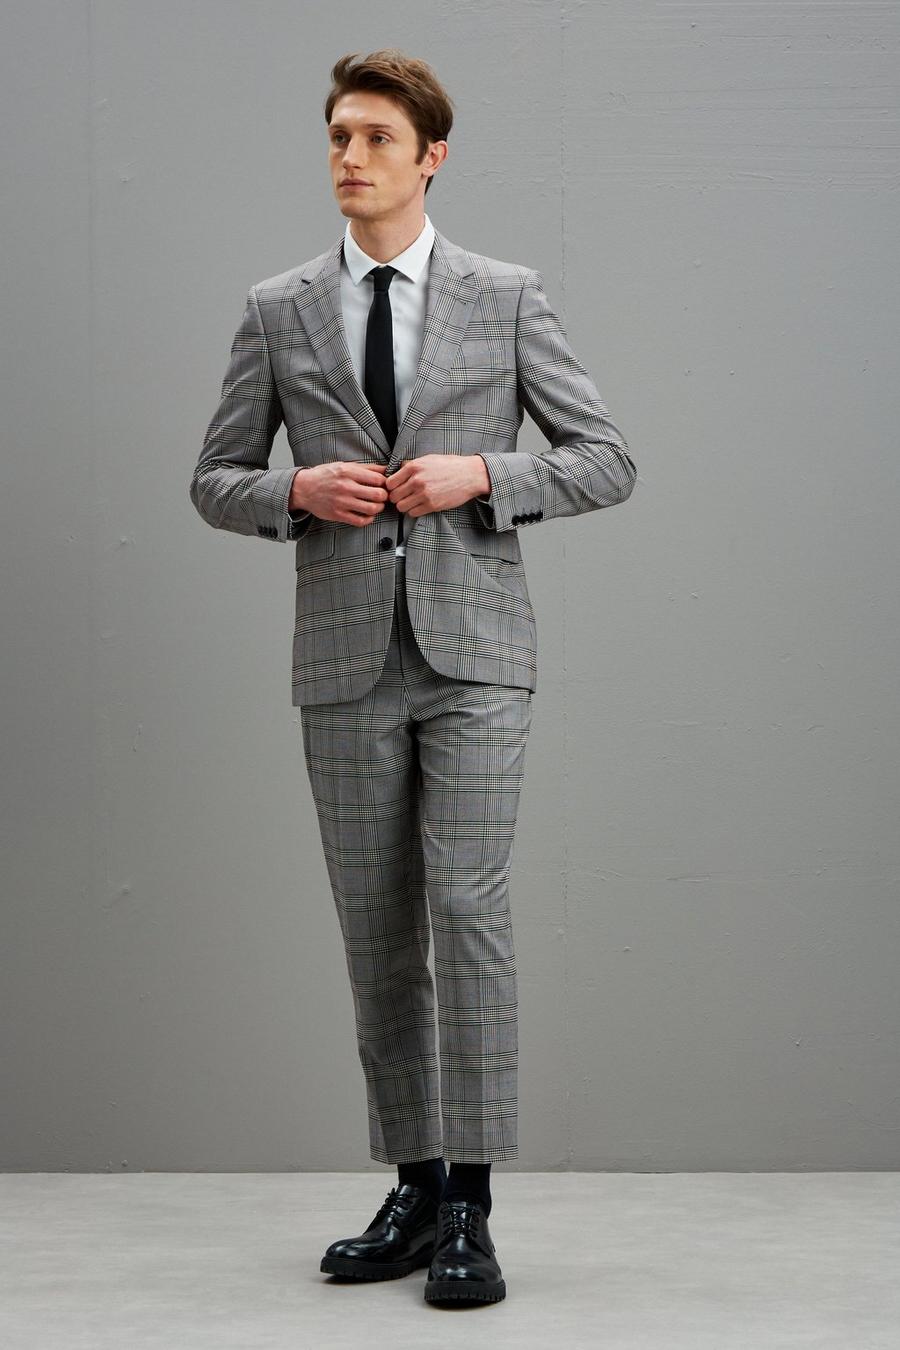 Men's Blazers | Formal, Casual & Tweed Blazers | Burton